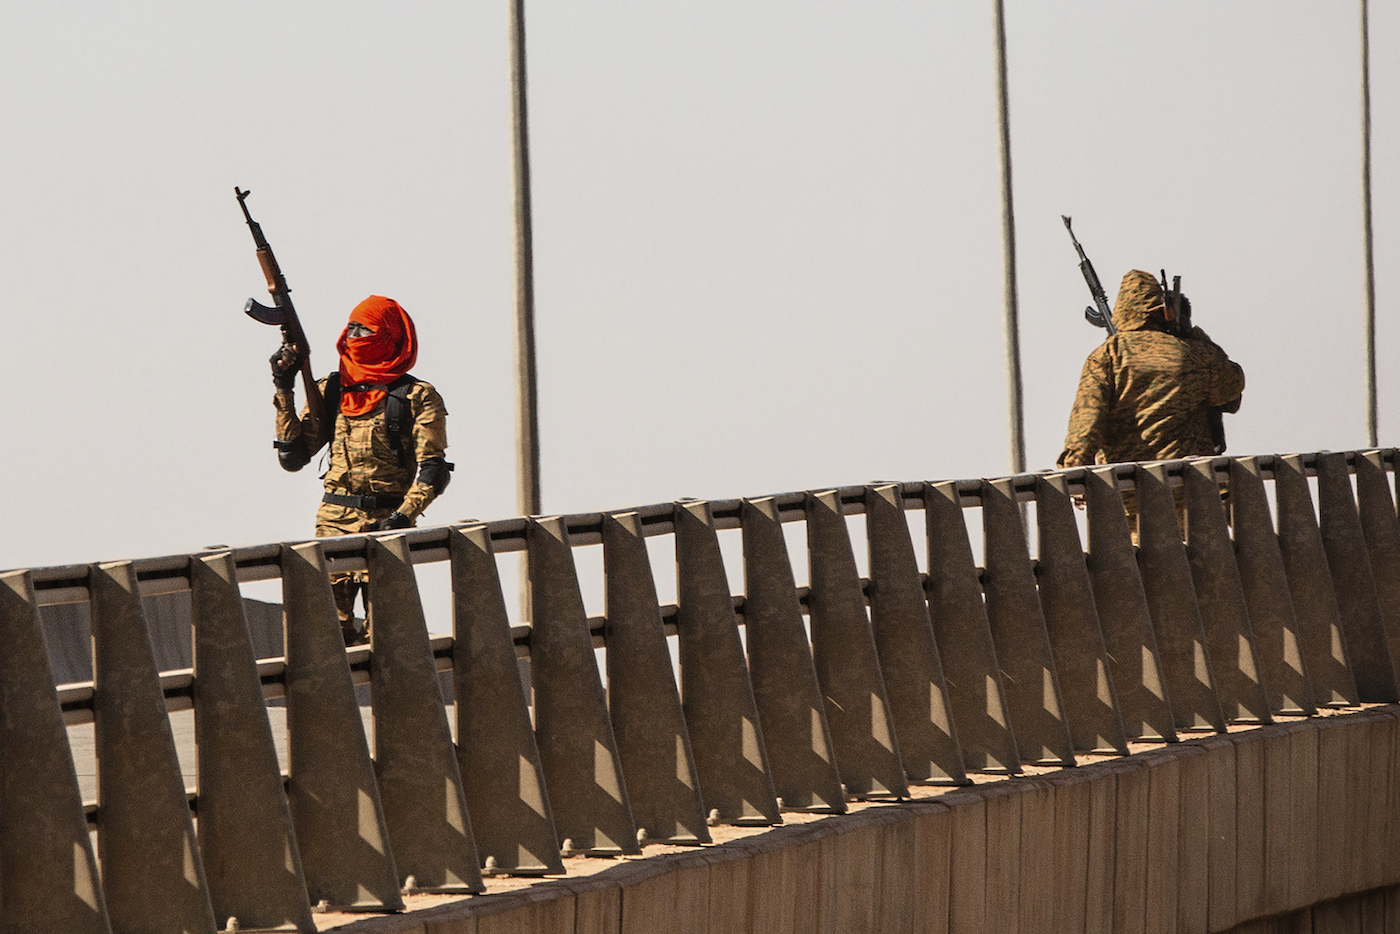 Burkina Faso: Military Coup in Ouagadougou